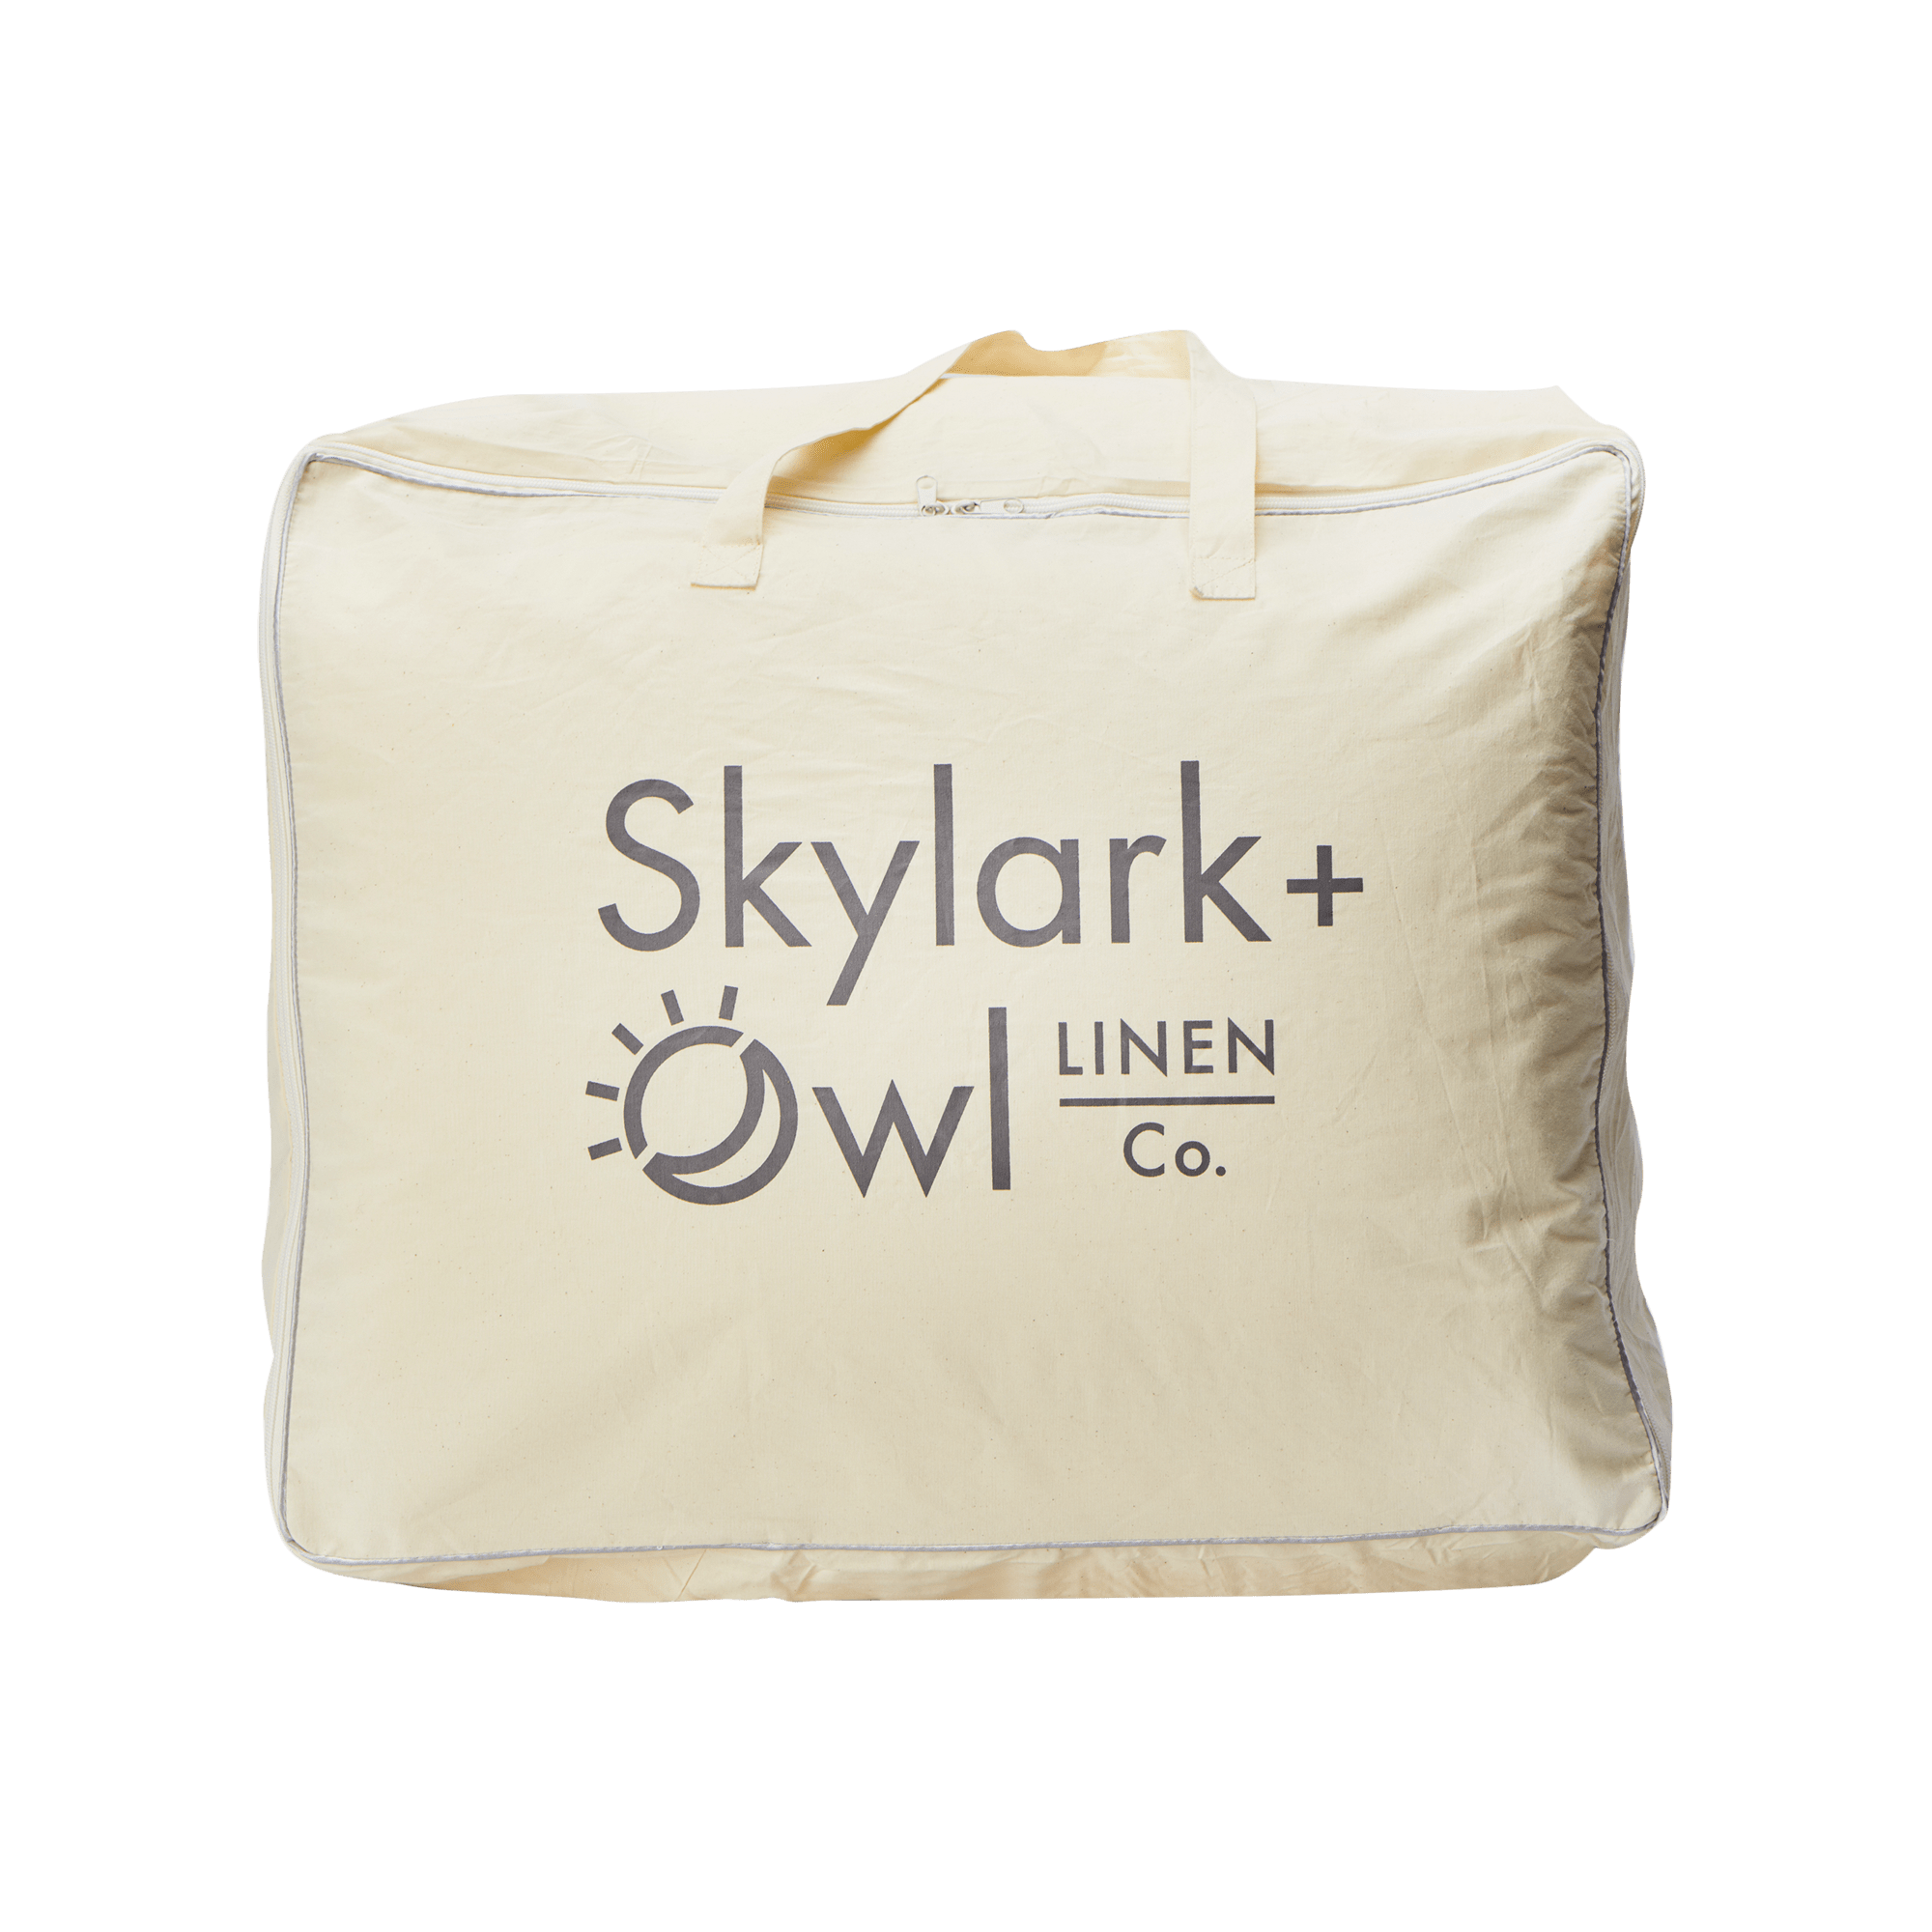 Down Alternative Duvet Blanket in Skylark + Owl casing